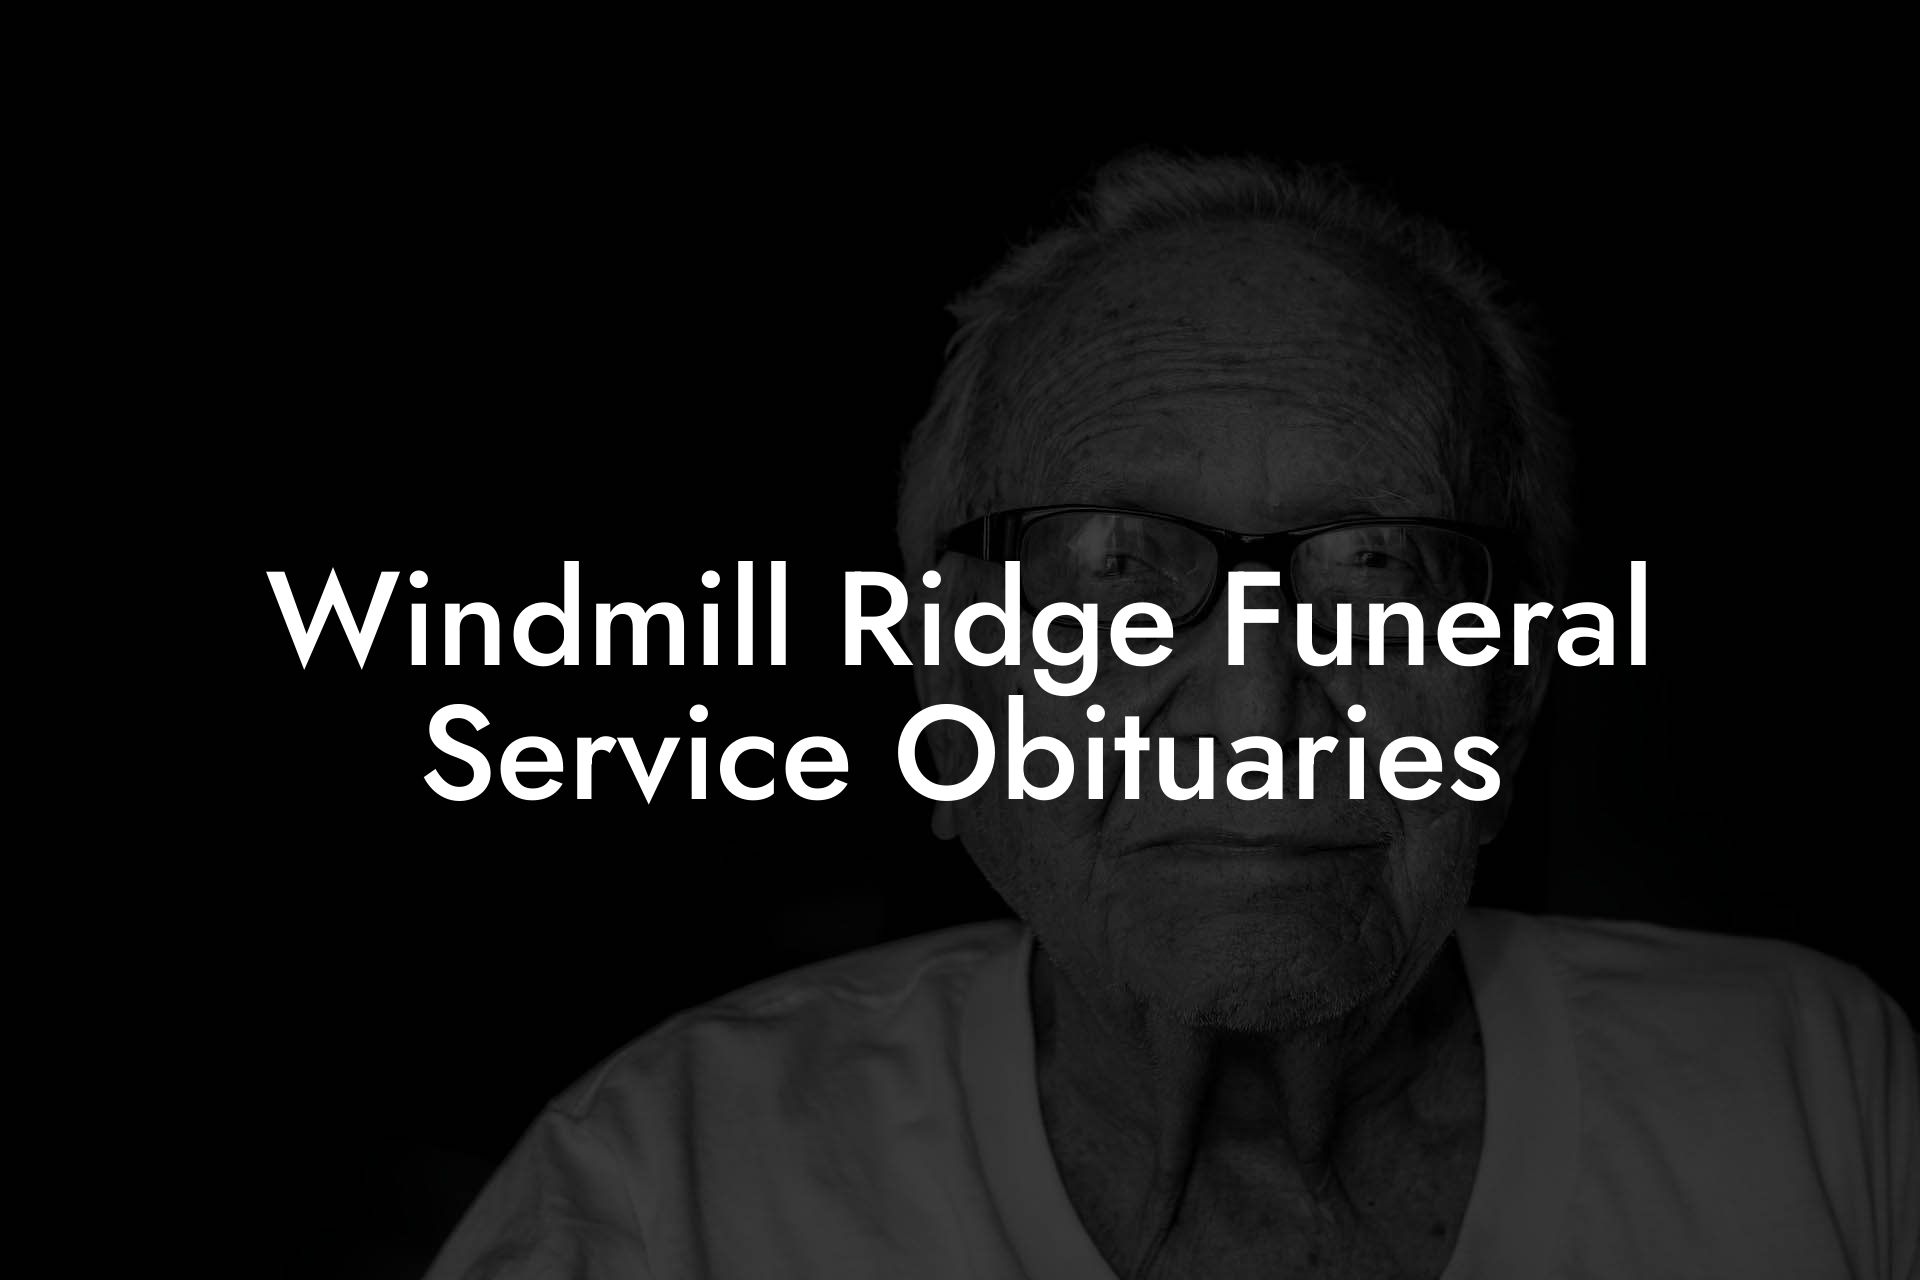 Windmill Ridge Funeral Service Obituaries